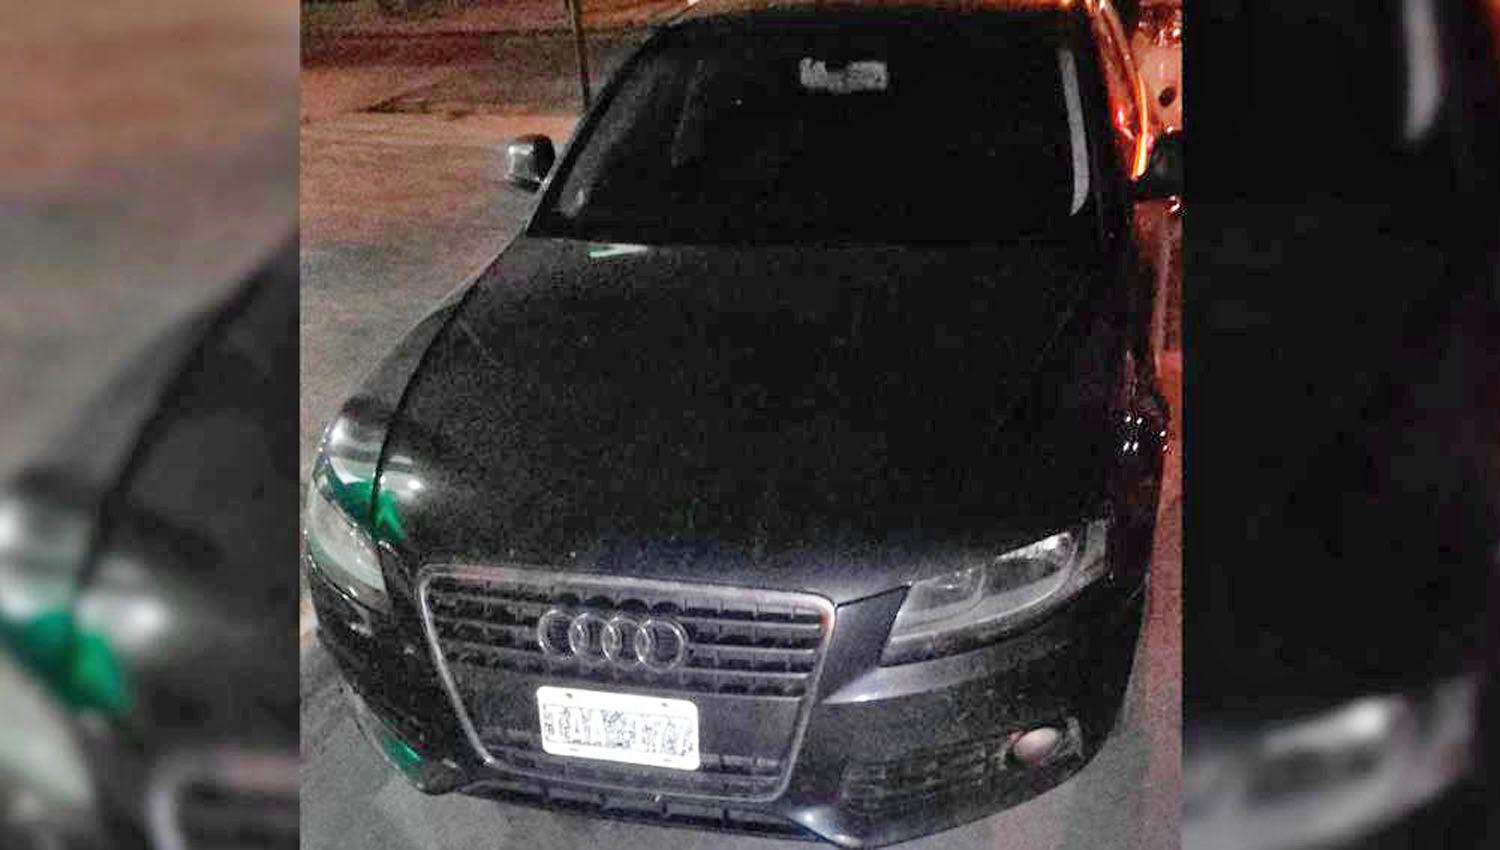 Circulaba en un Audi A4 y los policiacuteas descubren que el auto teniacutea pedido de secuestro en Capital Federal